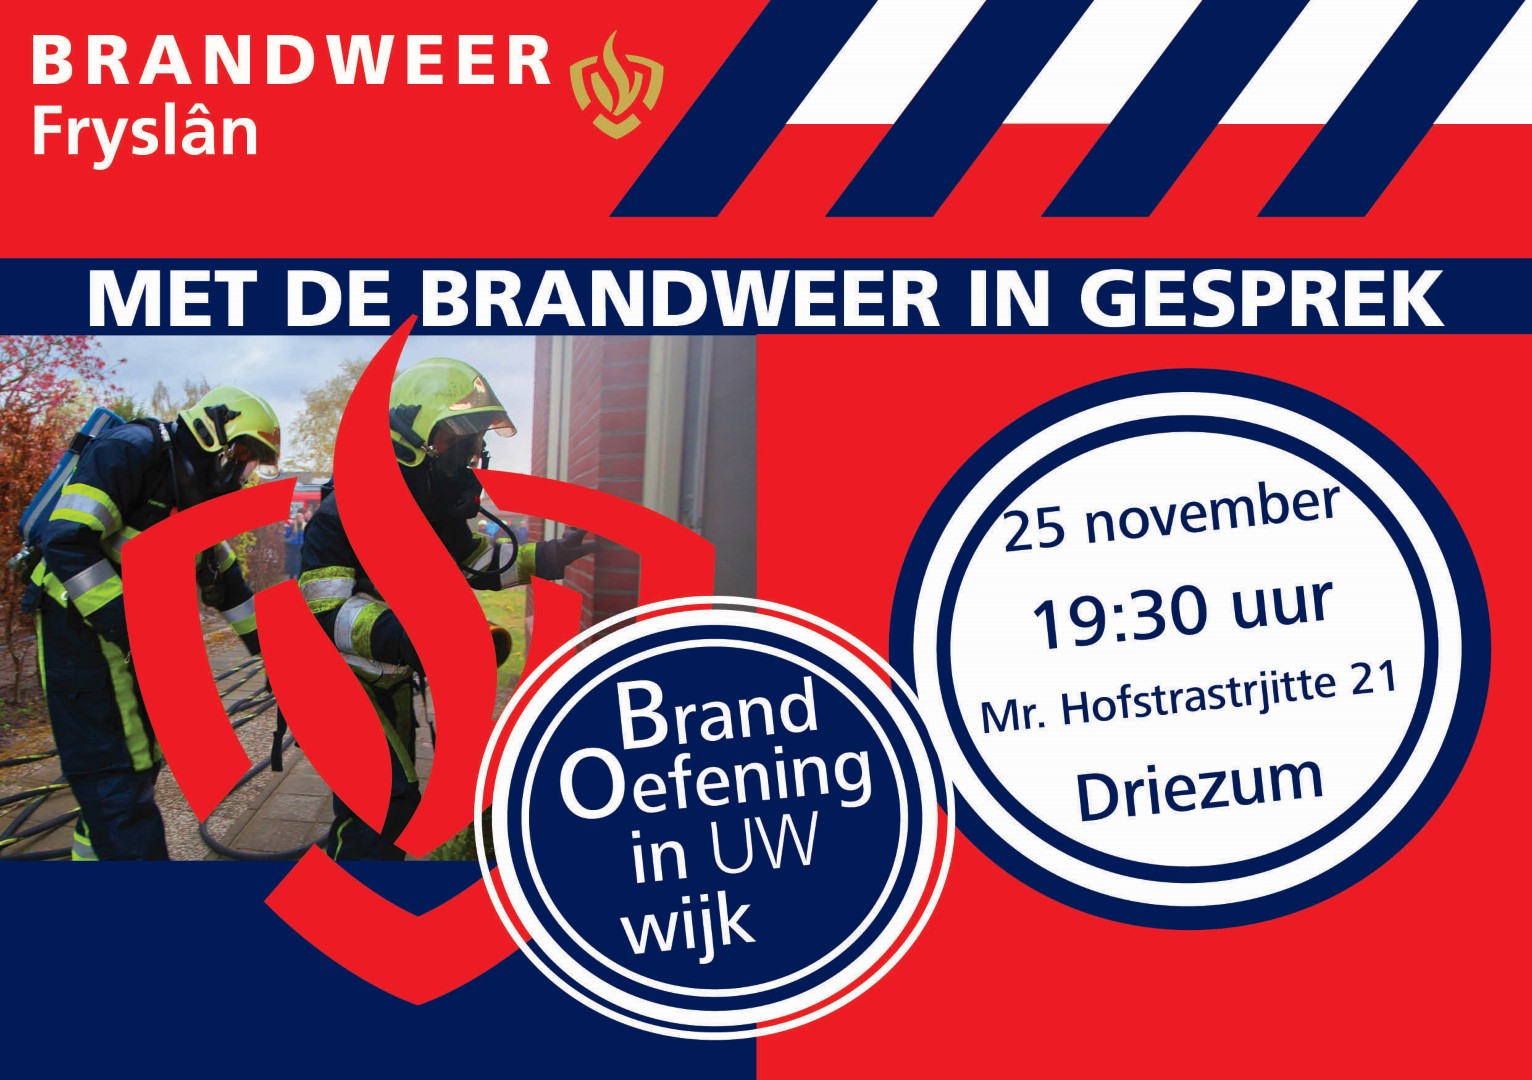 Brandweer_oefent_in_de_wijk_damwald (Large)